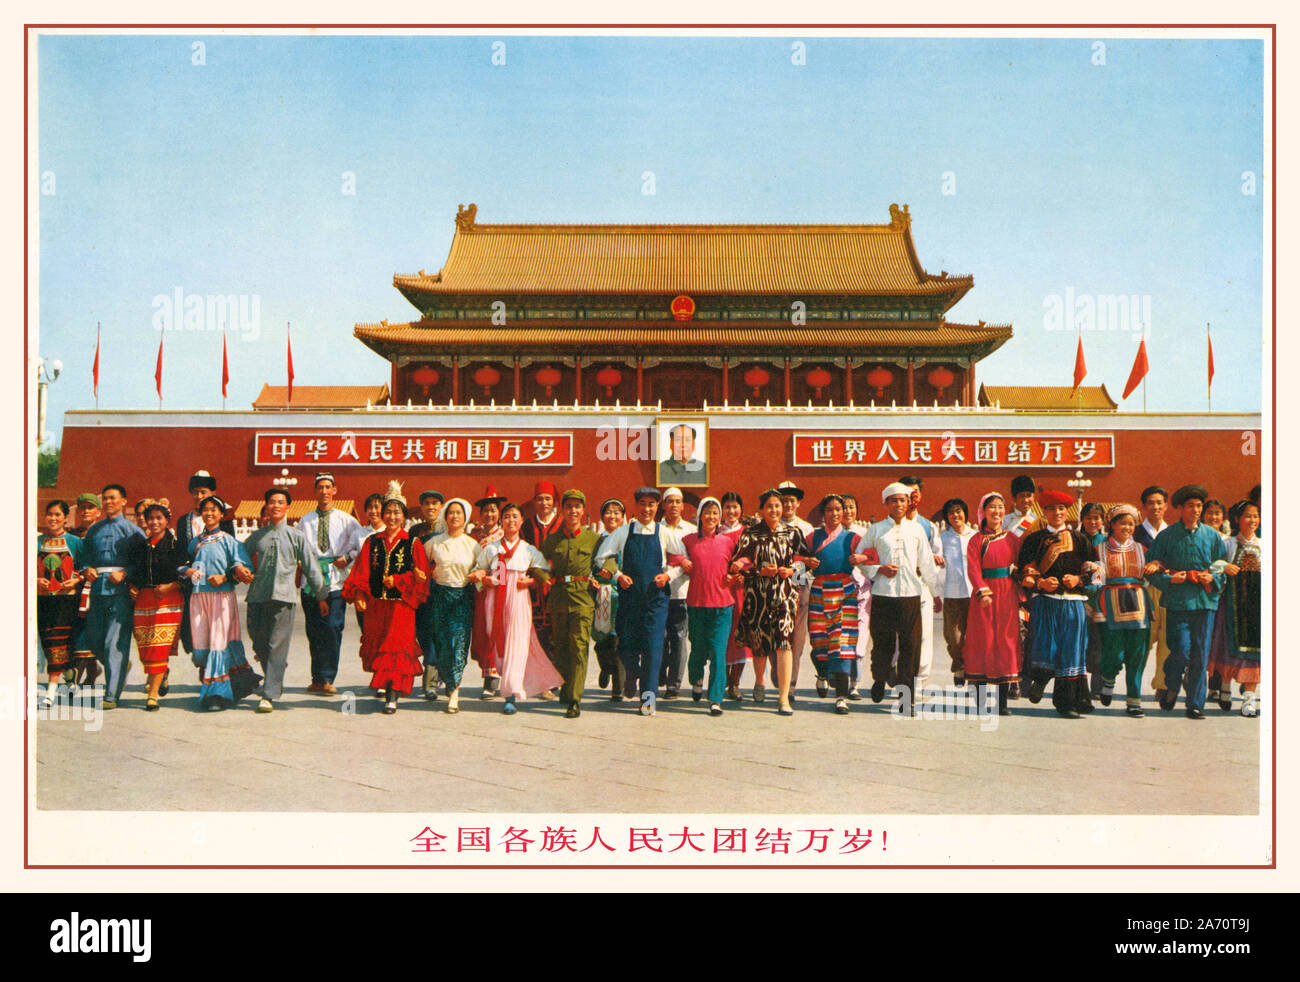 Jahrgang 1950 des Vorsitzenden Mao chinesische Propaganda Poster: "die Einheit aller Ethnien über der Nation 10 Tausend Jahre "Vorsitzender Mao Portrait hinter Leuten in den Poster oben stehen vor der Tian'an Men, die als nationales Symbol für China. Das Plakat steht für die Einheit der 56 Ethnien des gesamten chinesischen Nation. Stockfoto